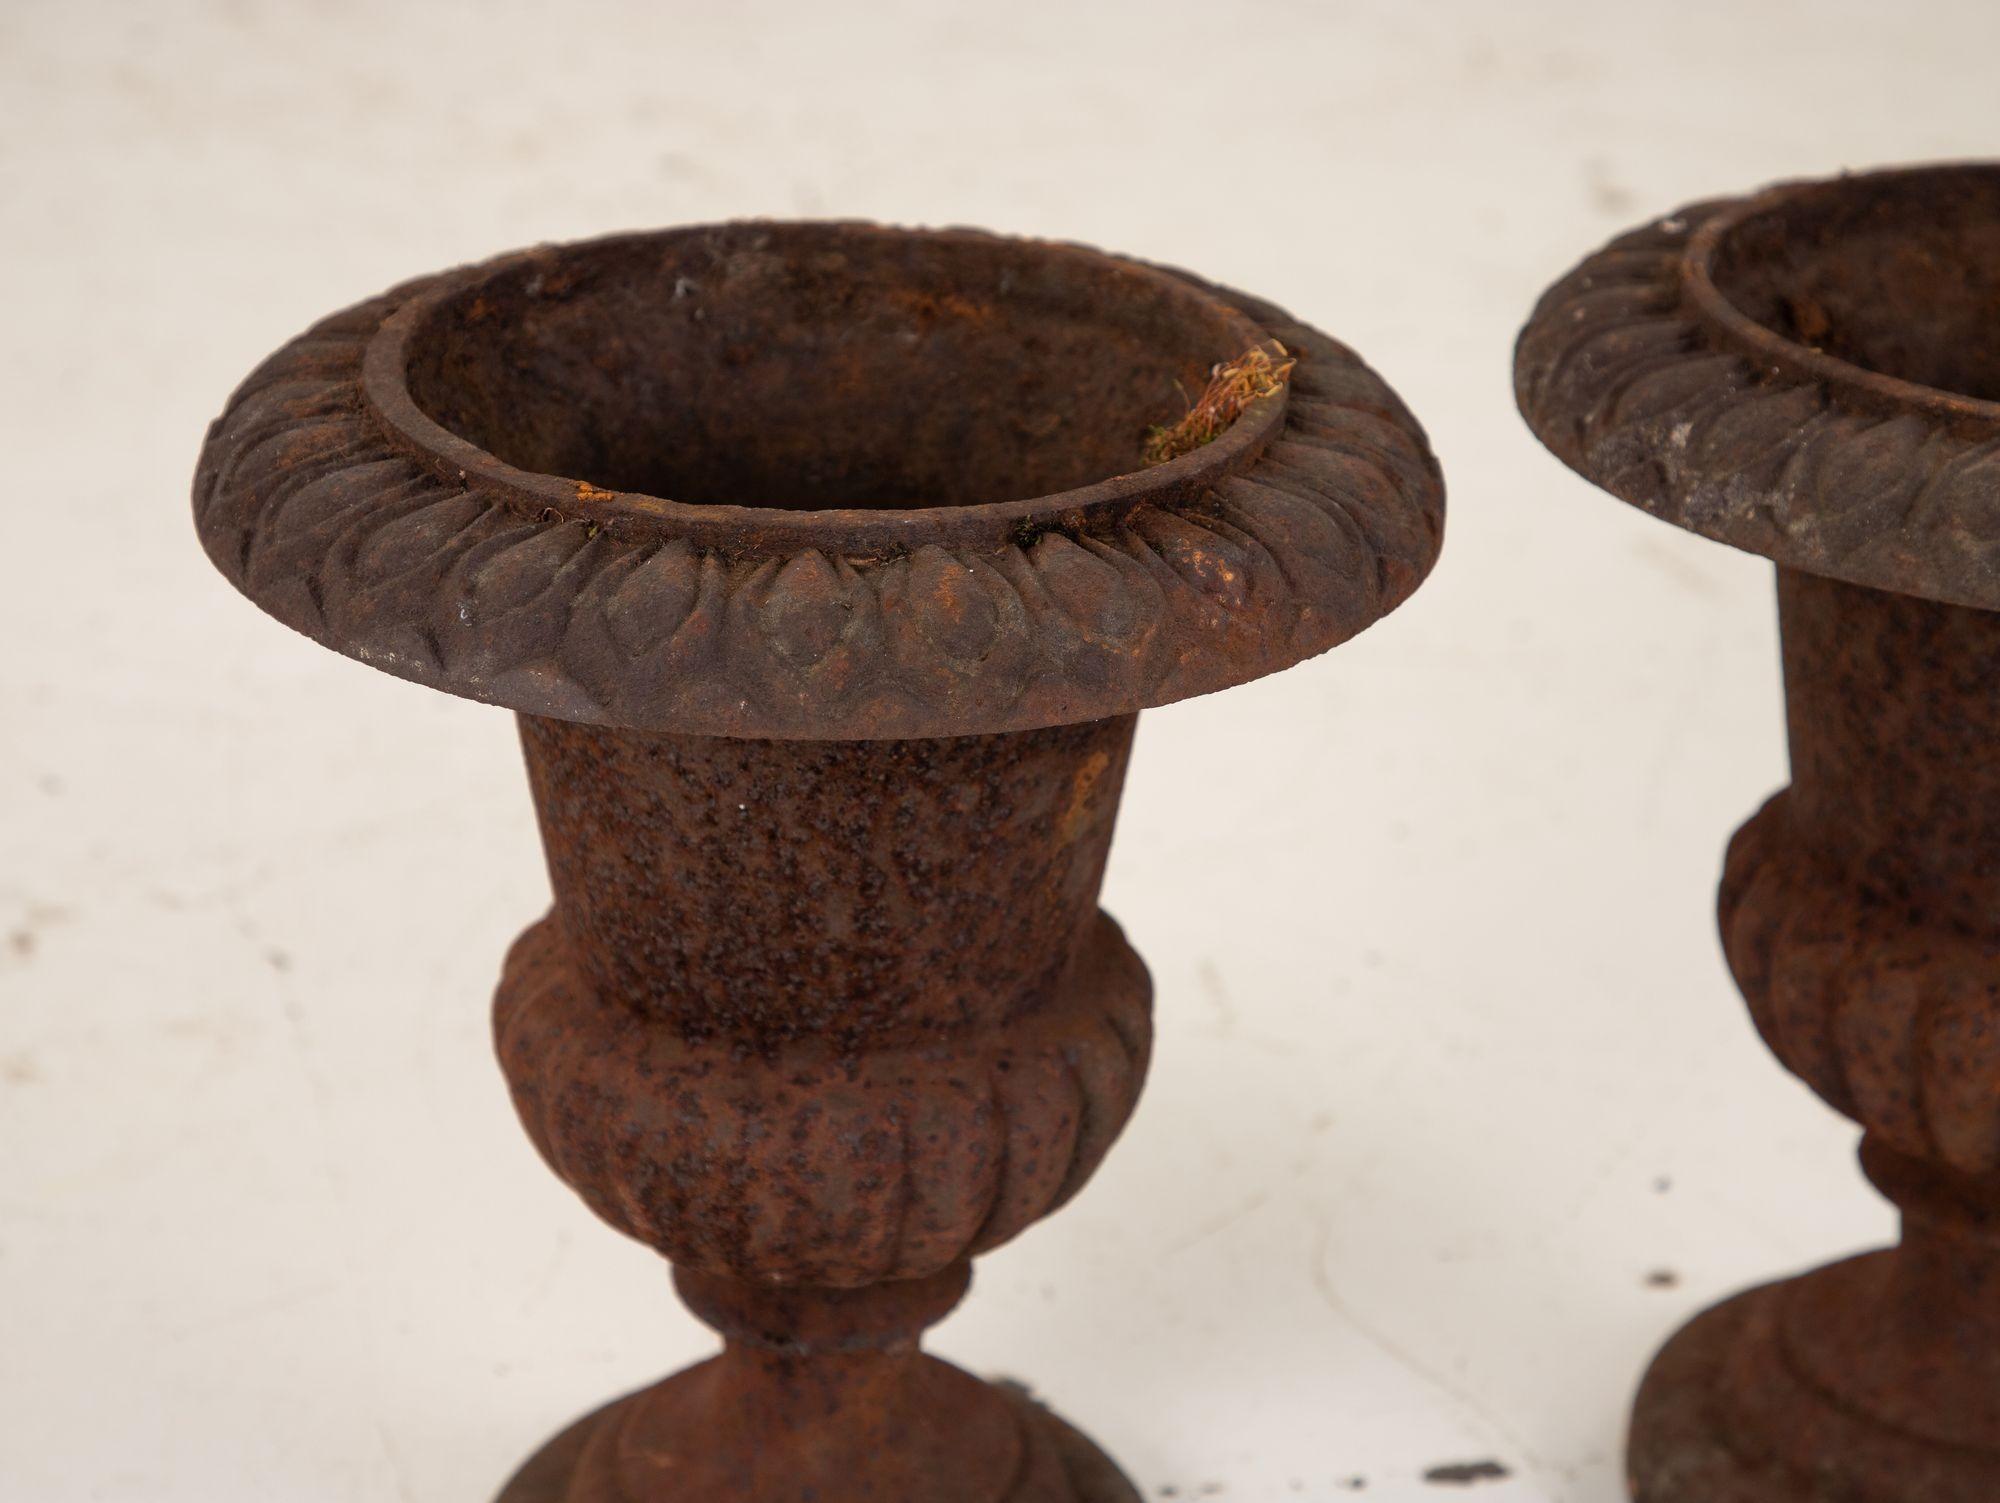 Ces urnes en fonte sont un bel exemple du design français de la fin du XIXe siècle. Ils ont une qualité intemporelle qui les rend parfaits pour tout jardin ou espace extérieur. Les urnes sont fabriquées en fonte massive, ce qui leur confère un poids